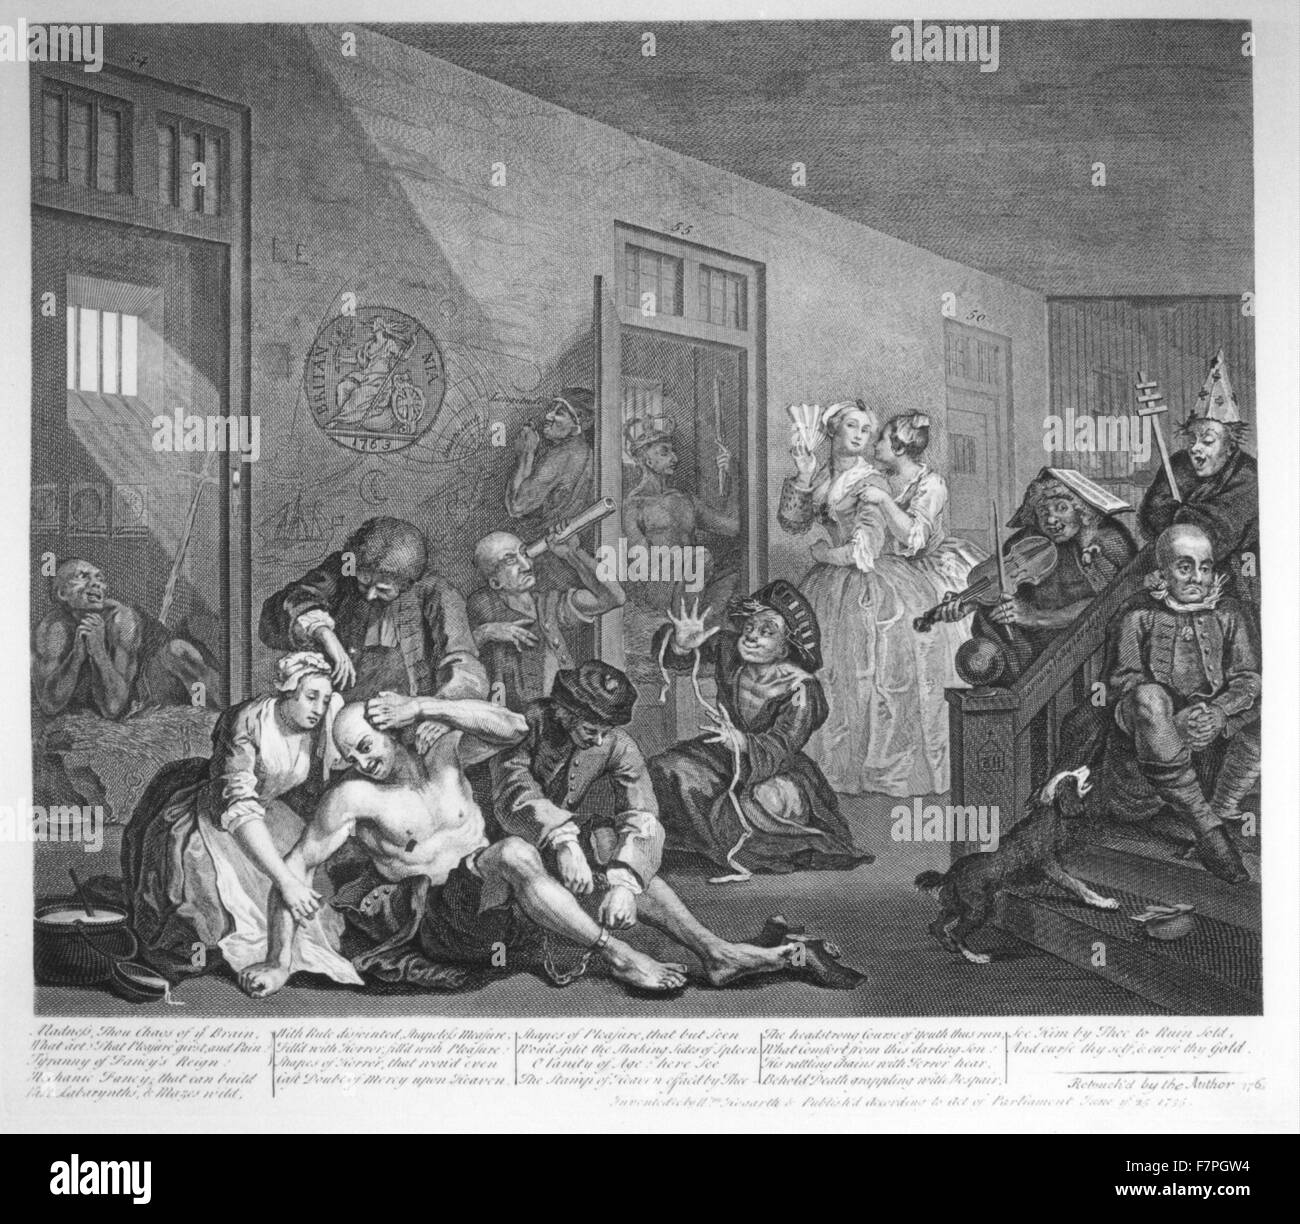 Bolgia asilo mentale dal 'Rake progresso dell' serie di dipinti del XVIII secolo artista inglese William Hogarth. 1735 Foto Stock